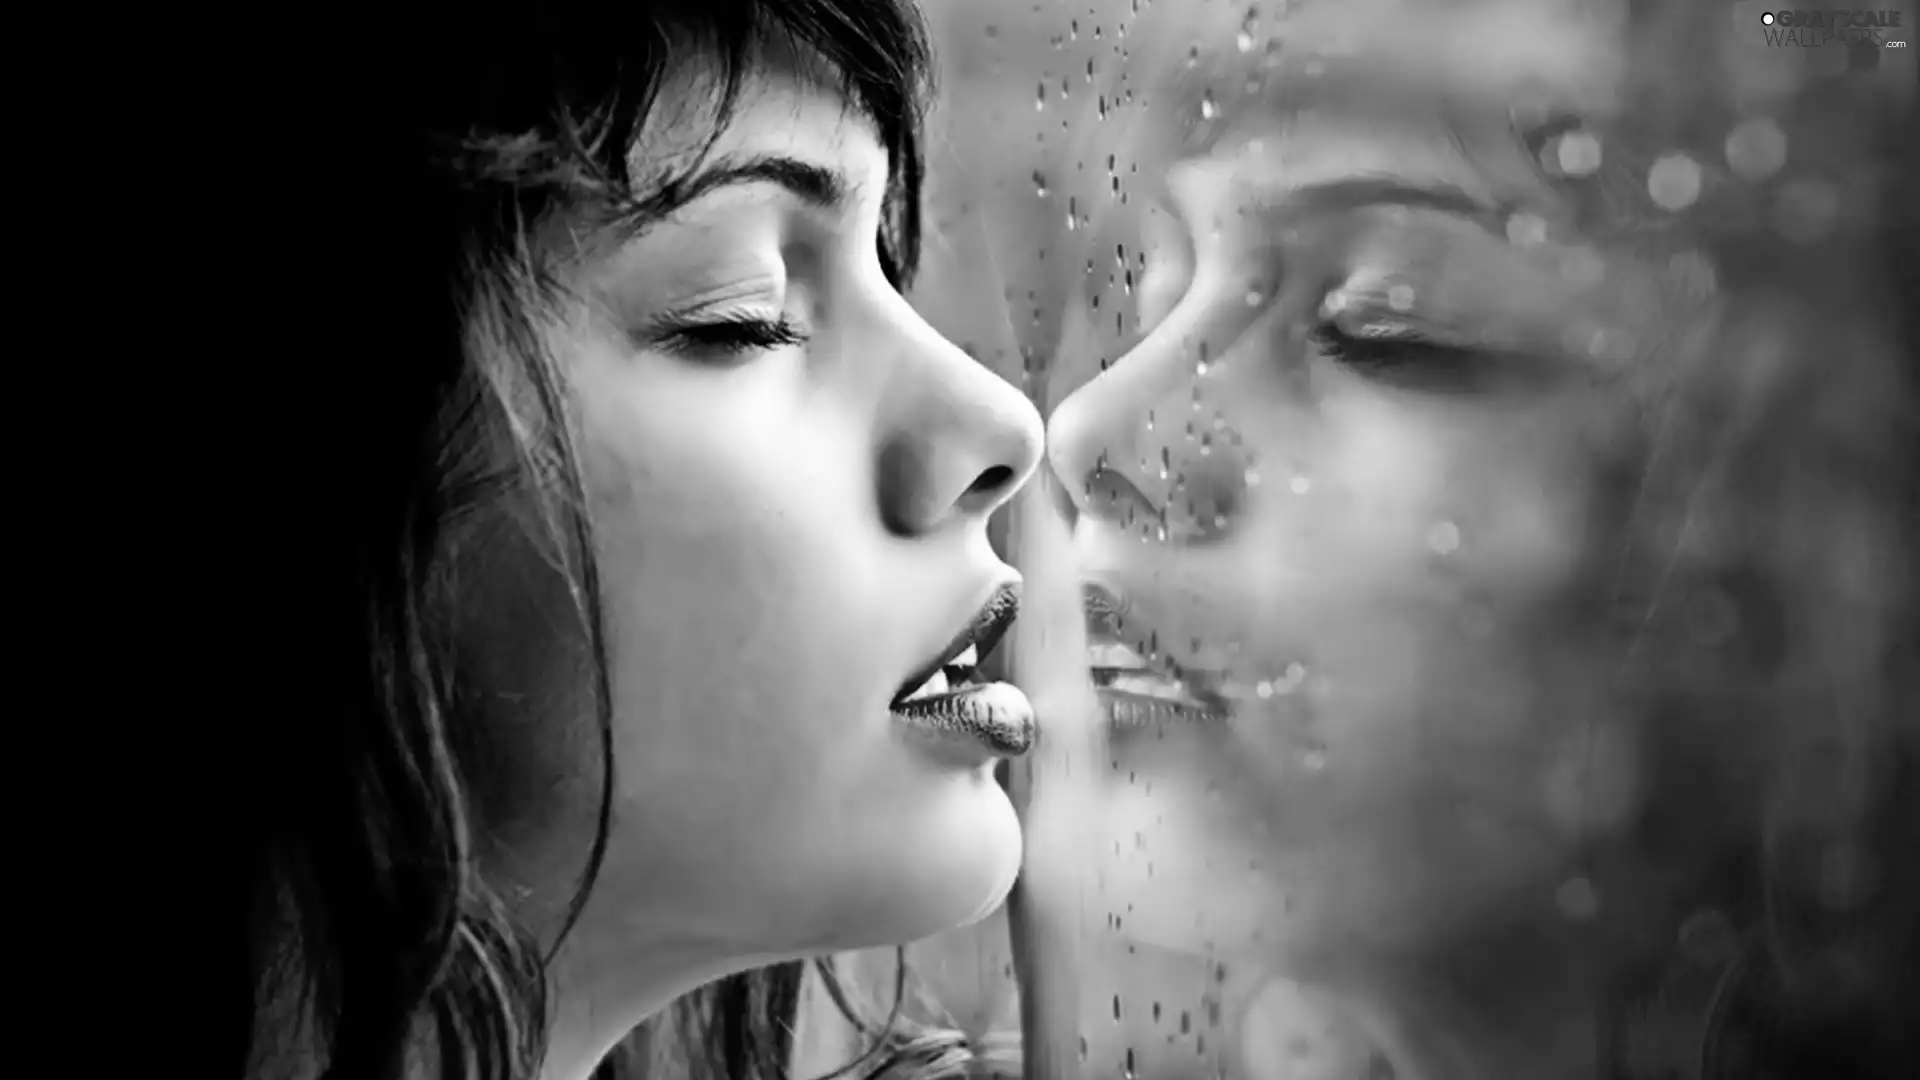 profile, Beauty, reflection, Rain, Glass, Women